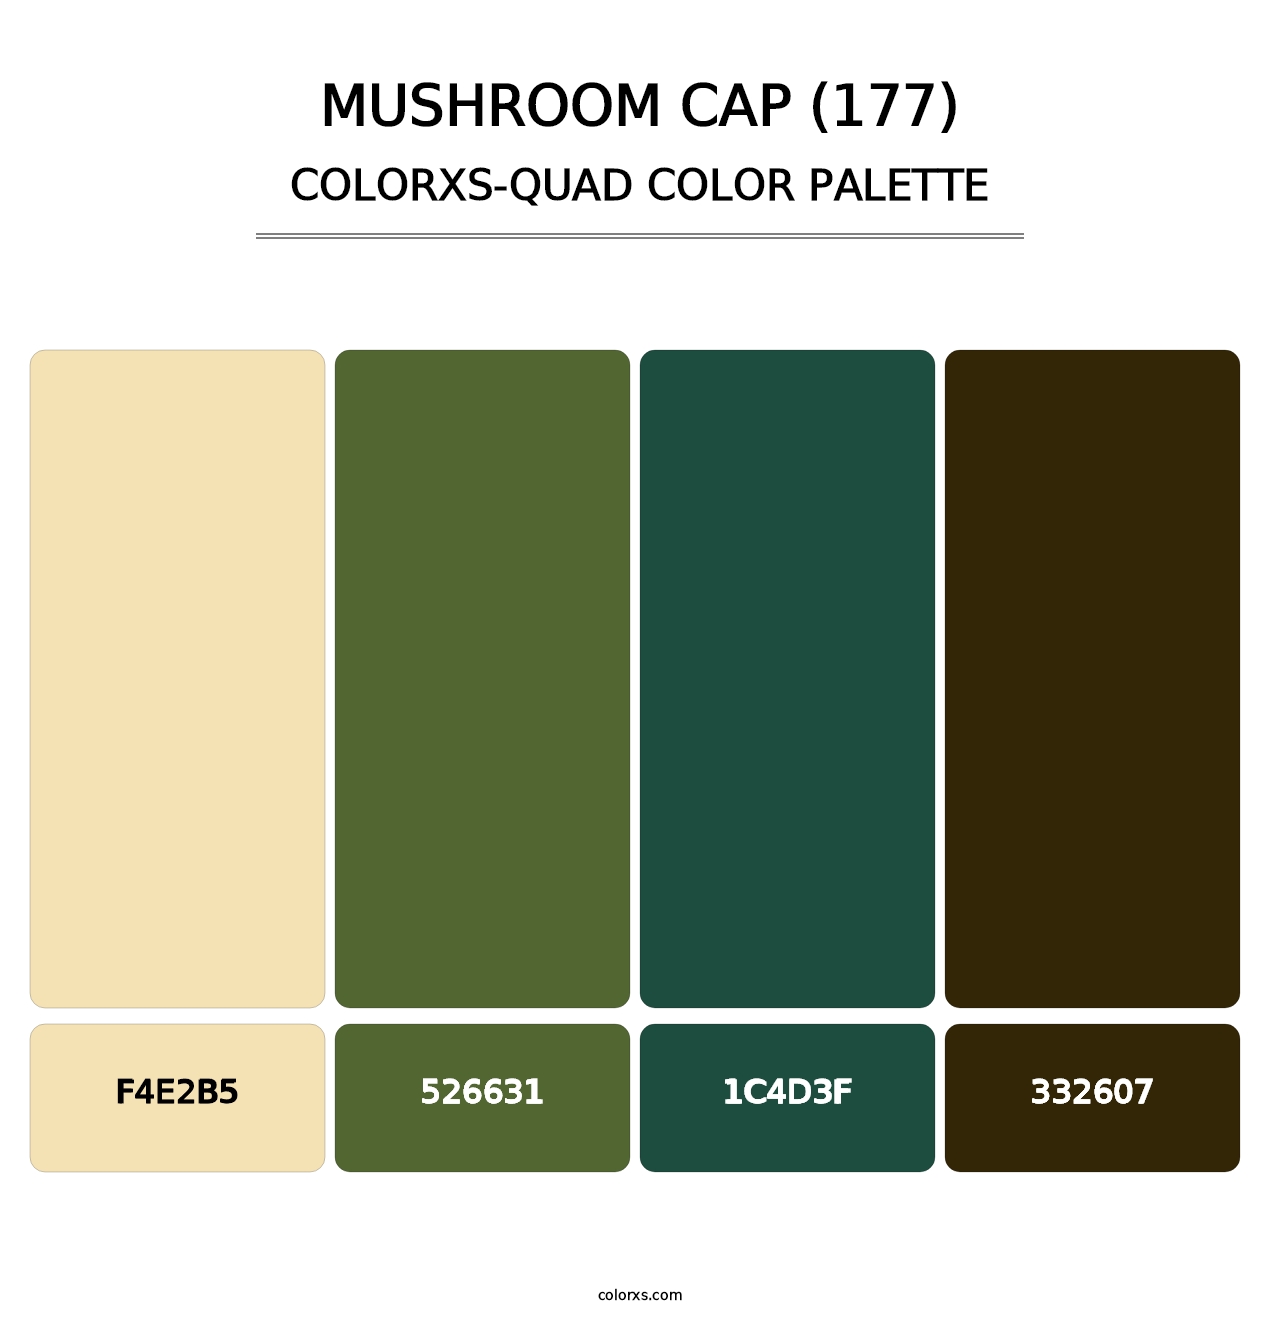 Mushroom Cap (177) - Colorxs Quad Palette